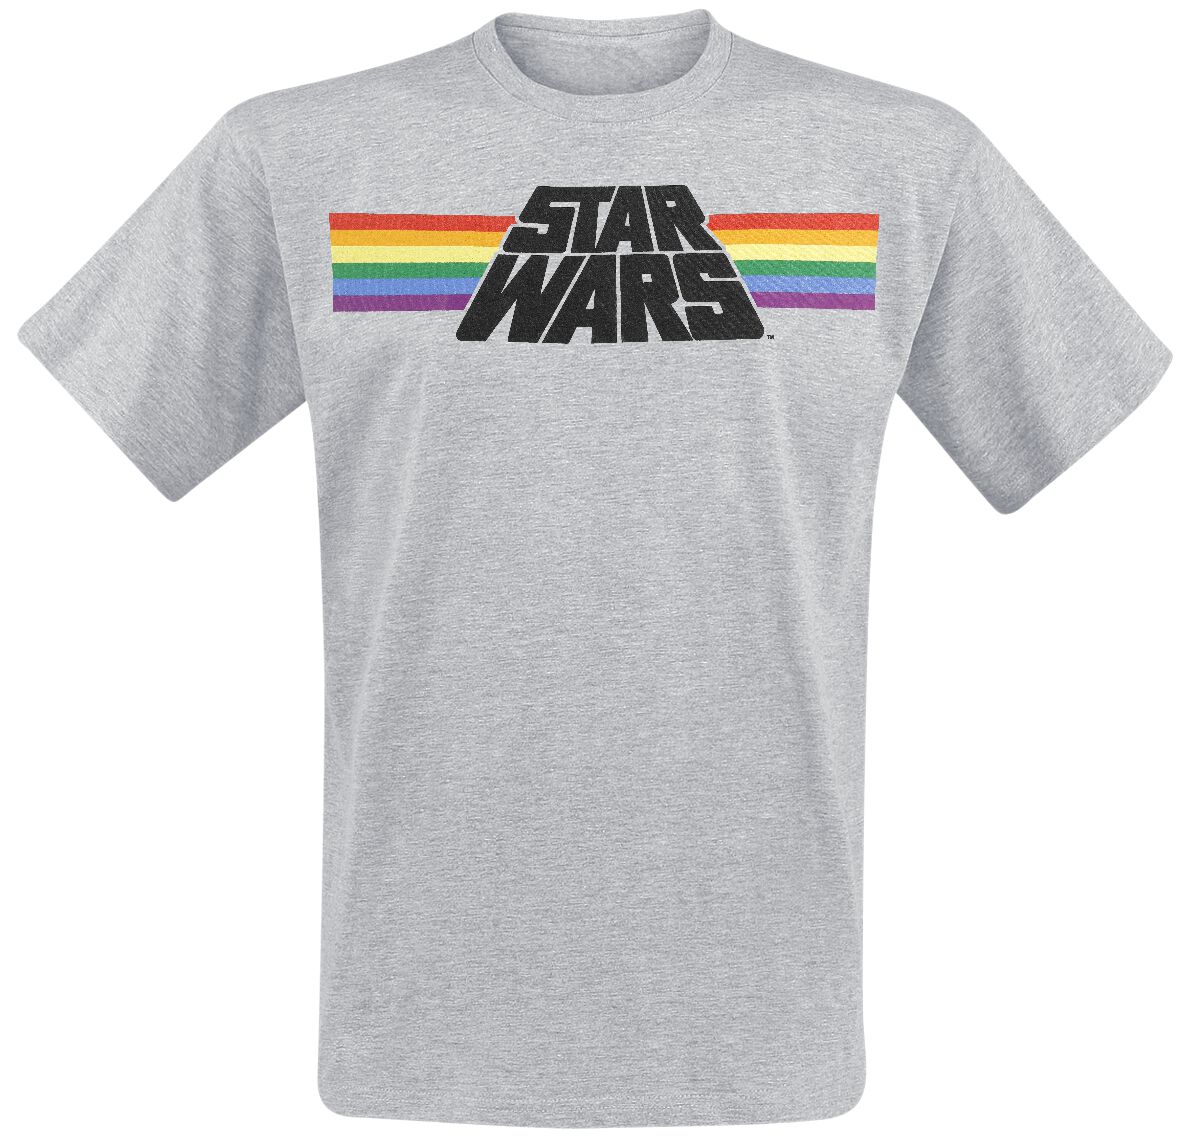 Star Wars T-Shirt - Classic Rainbow - M bis 3XL - für Männer - Größe XXL - grau meliert  - Lizenzierter Fanartikel